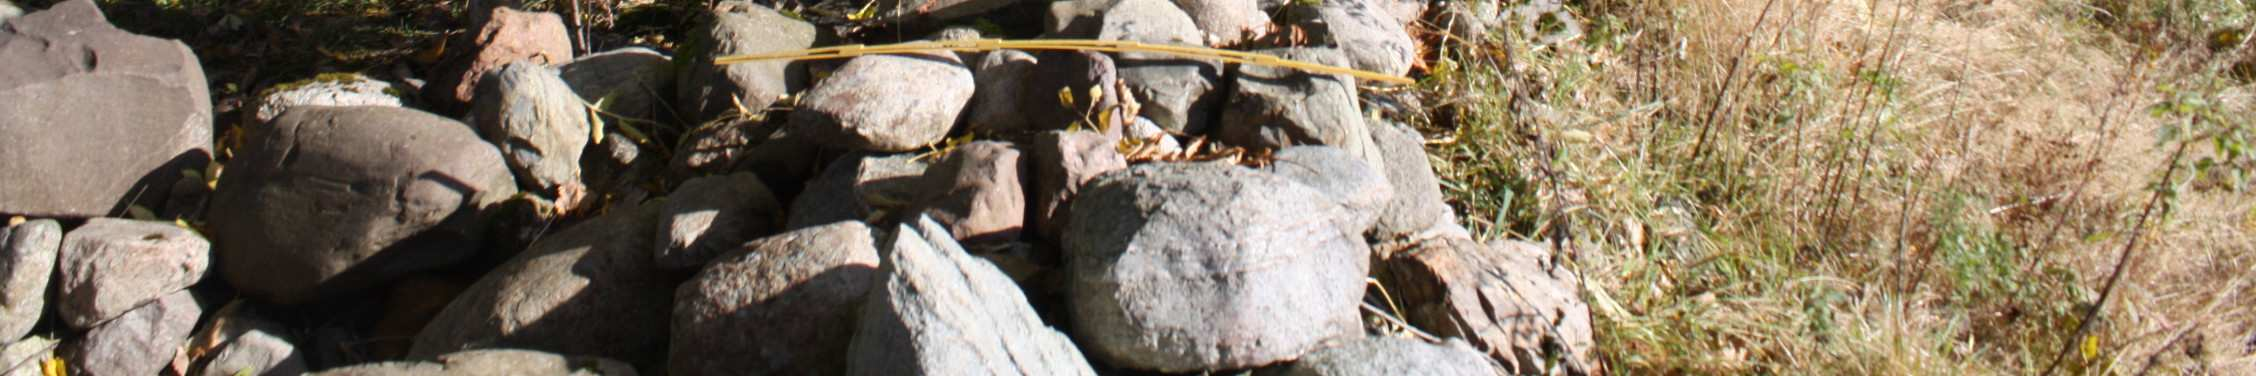 Størrelsen på steinen varierer hovedsakelig mellom 30-50 centimeter i diameter.